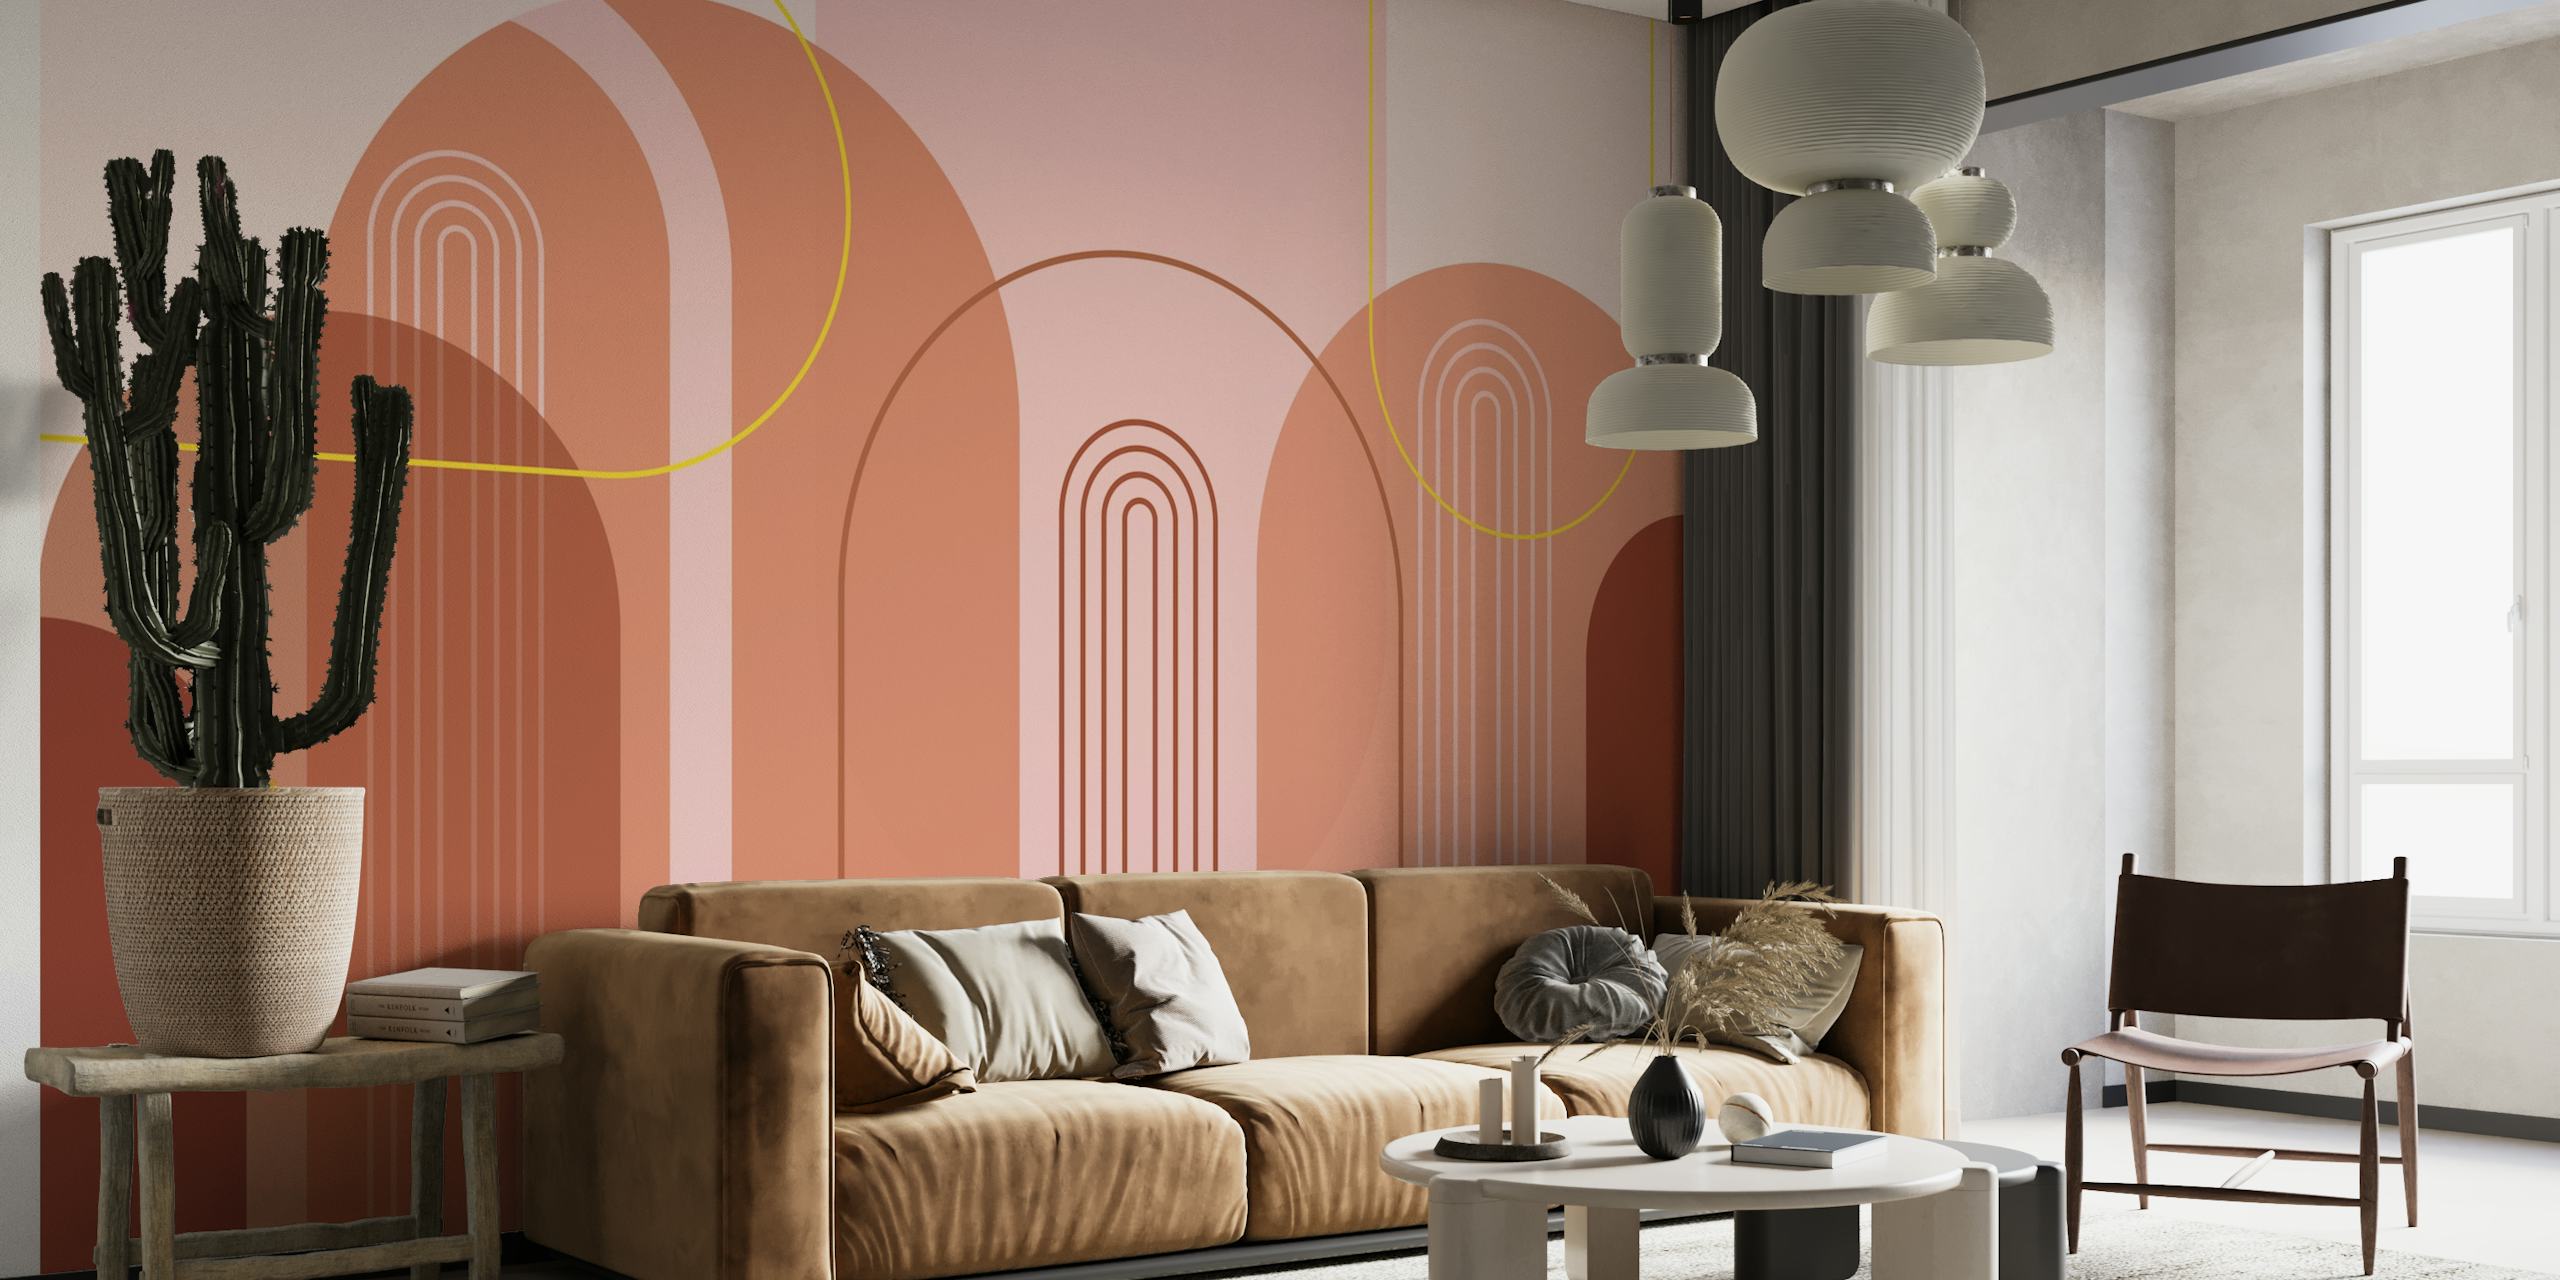 Abstrakt moderne buevægmaleri fra midten af århundredet med pink, beige, rødbrun og guldfarver